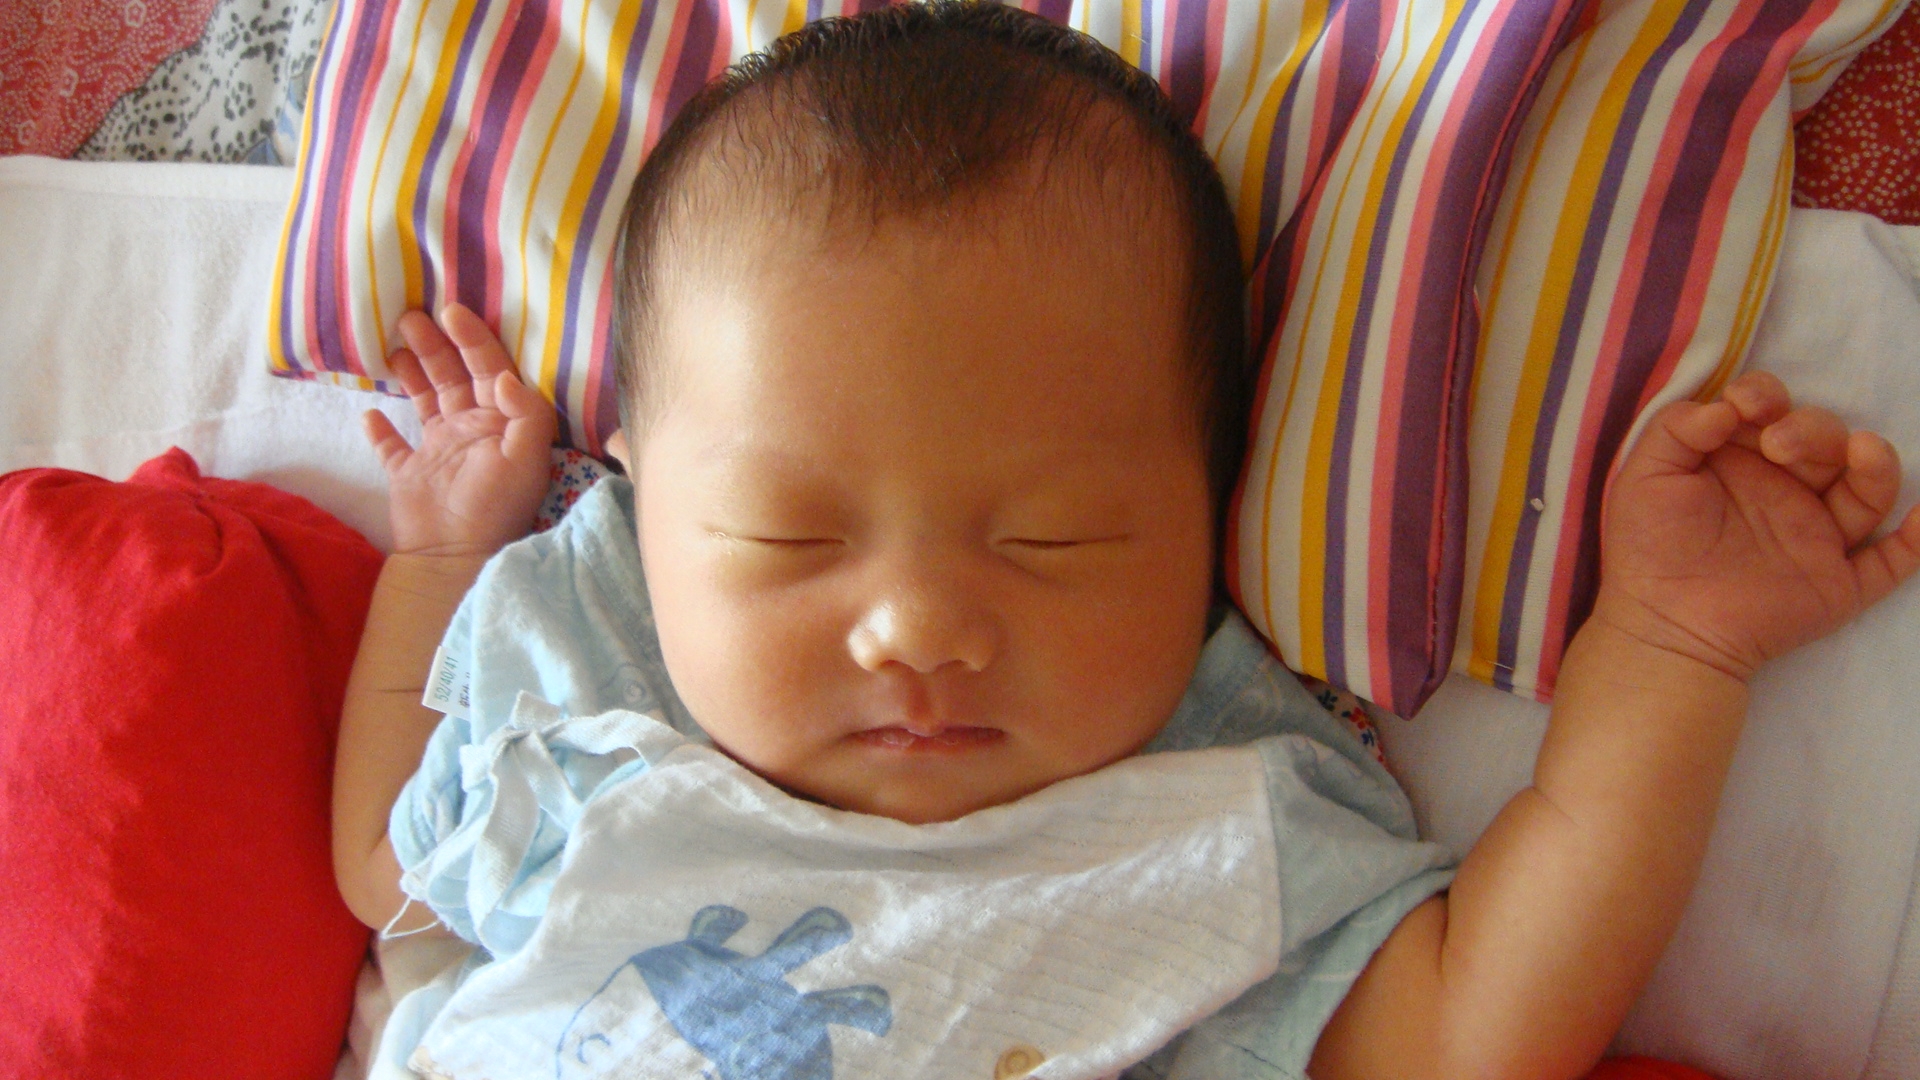 婴儿侧睡（婴儿睡姿讲究多）-幼儿百科-魔术铺